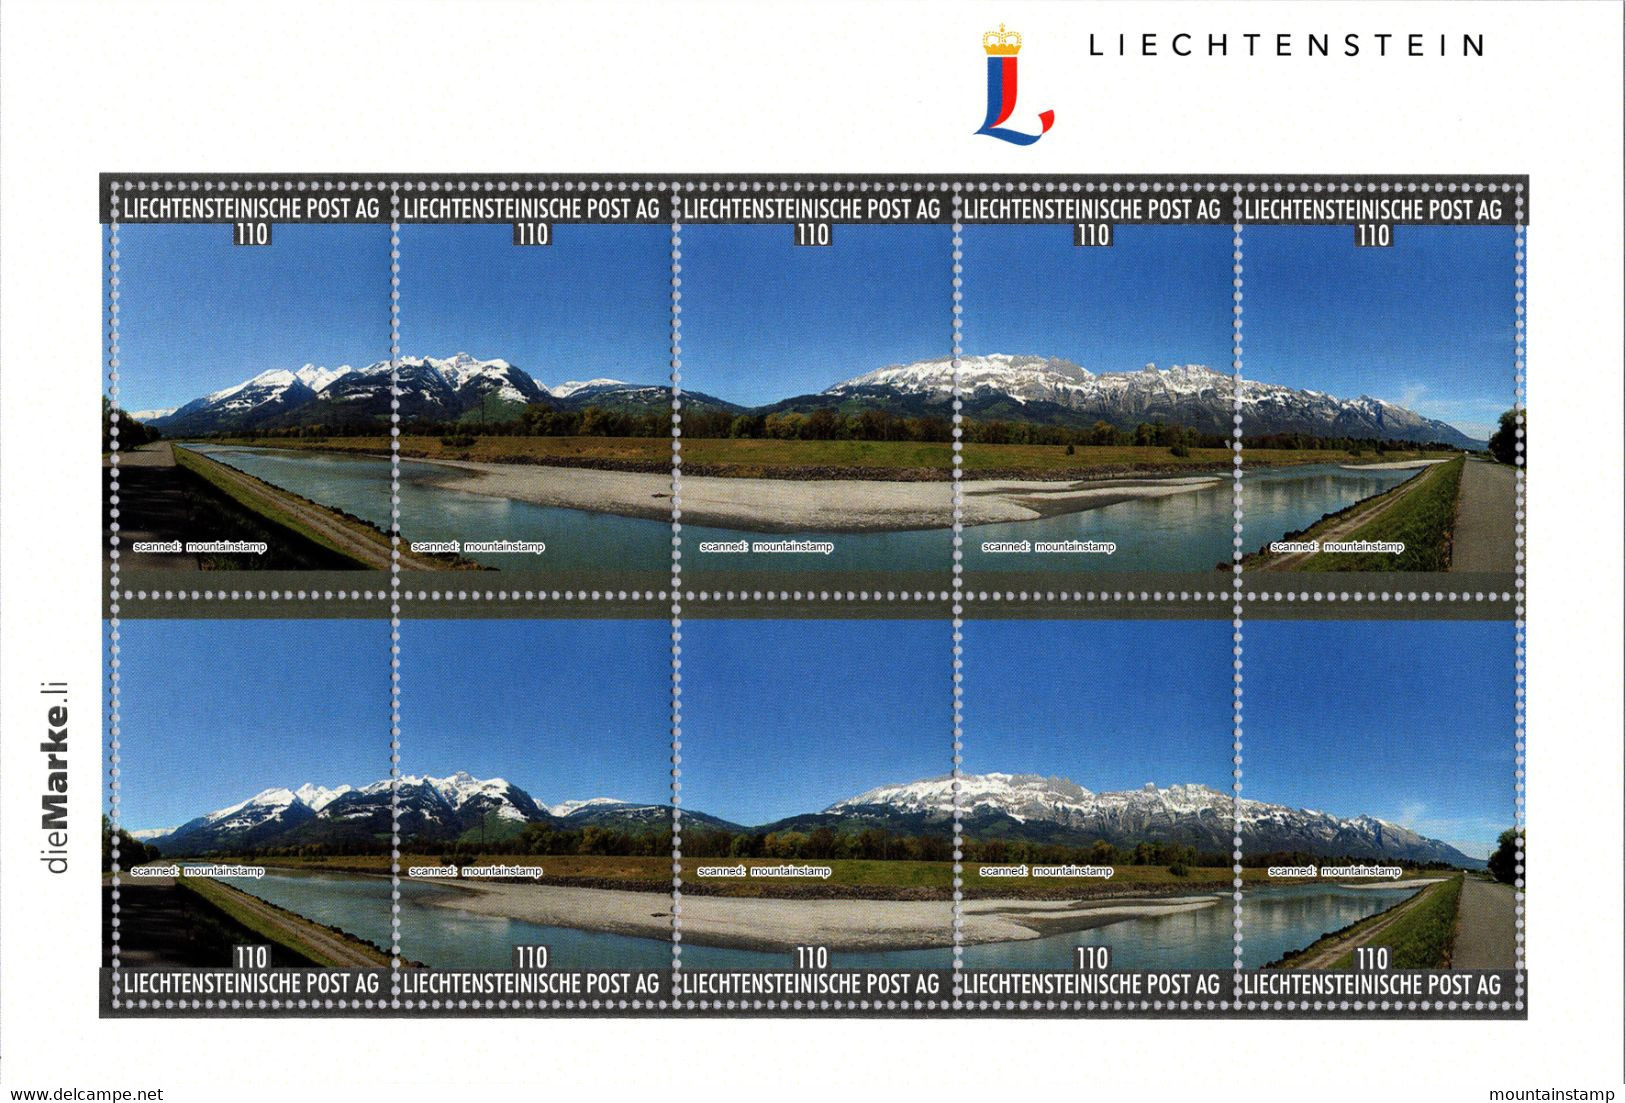 Liechtenstein 2022 "Die Marke" Fr.1.10 With Personalised 180 Degree Panorama Mountains Berge Alpstein & Alvier Range MNH - Neufs